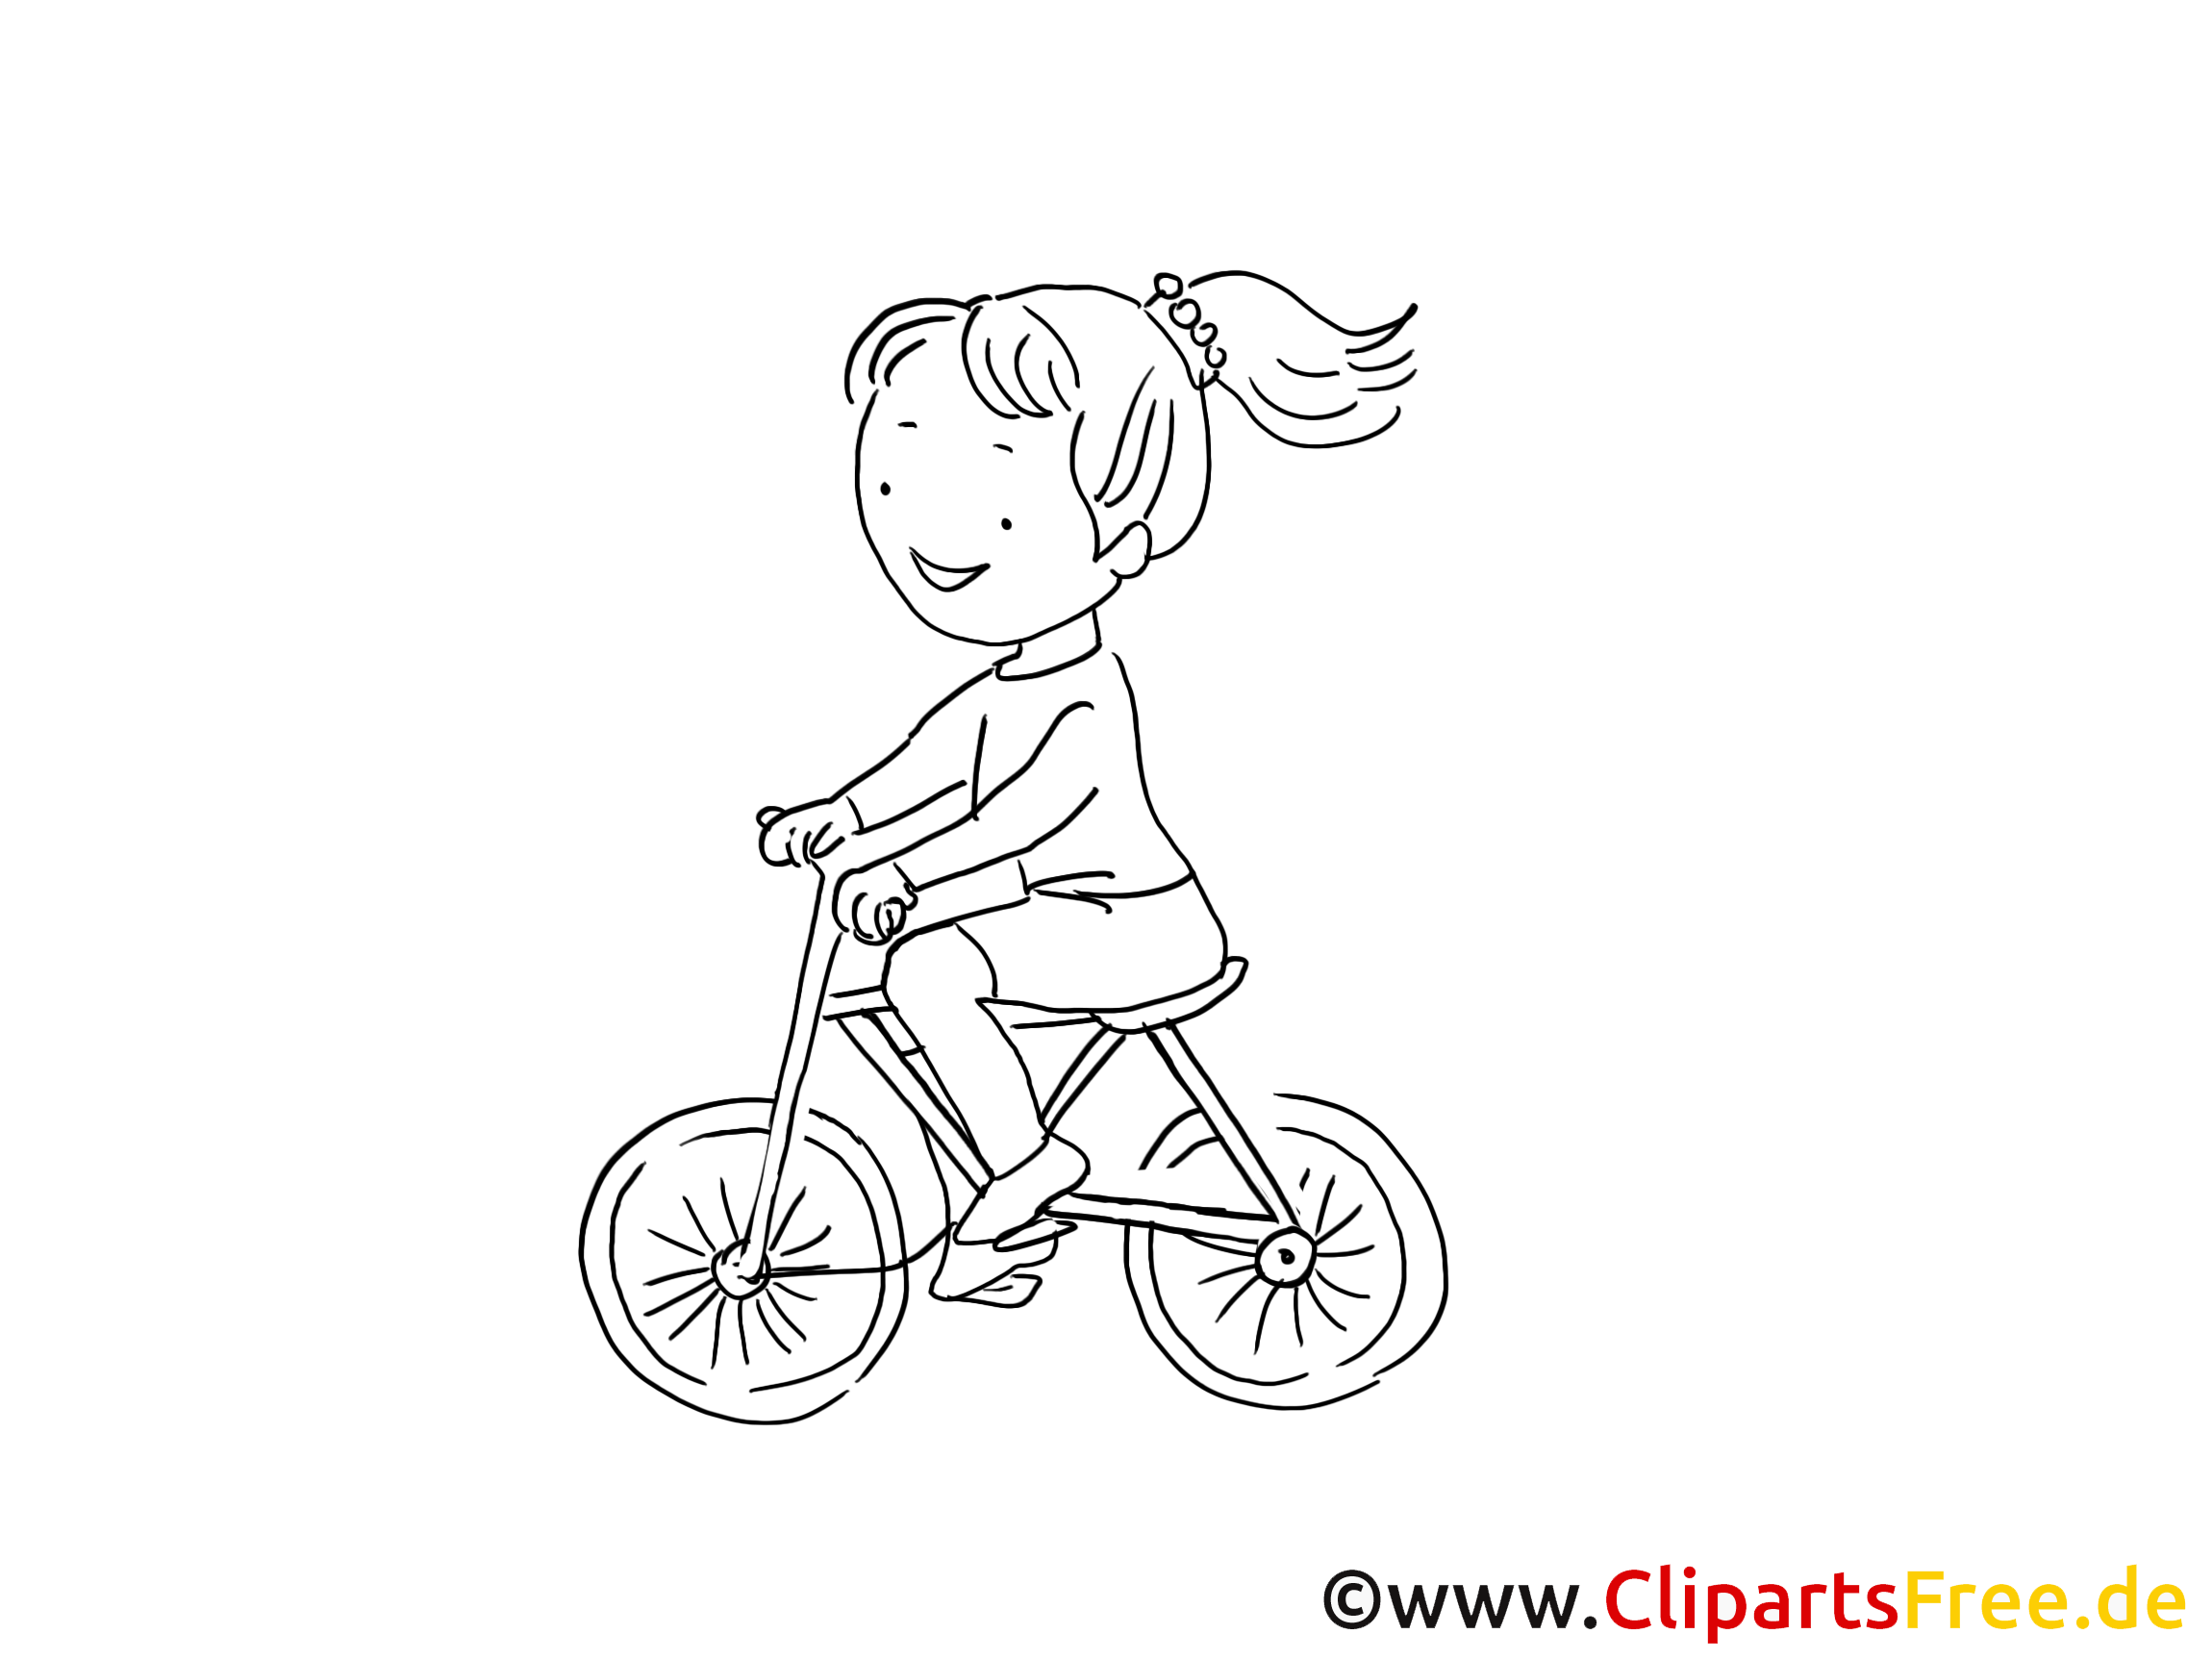 Vélo dessin à imprimer - Bicyclette cliparts